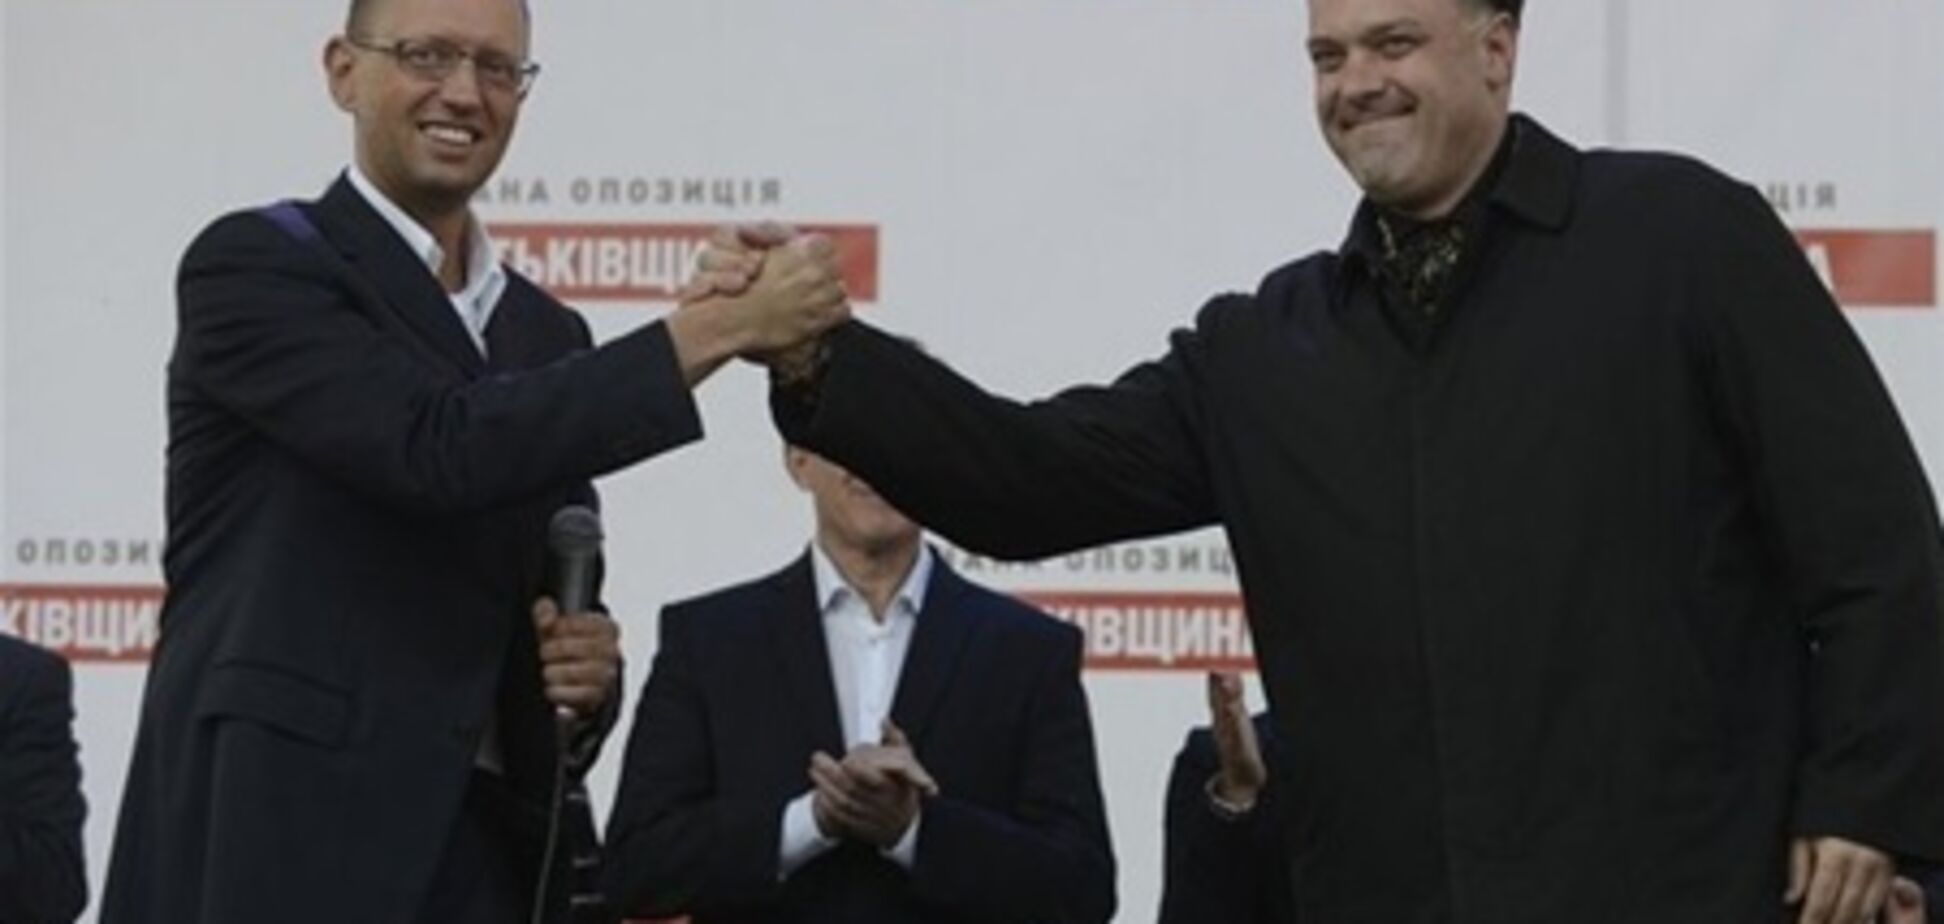 Яценюк и Тягнибок по-разному оценили призыв Тимошенко